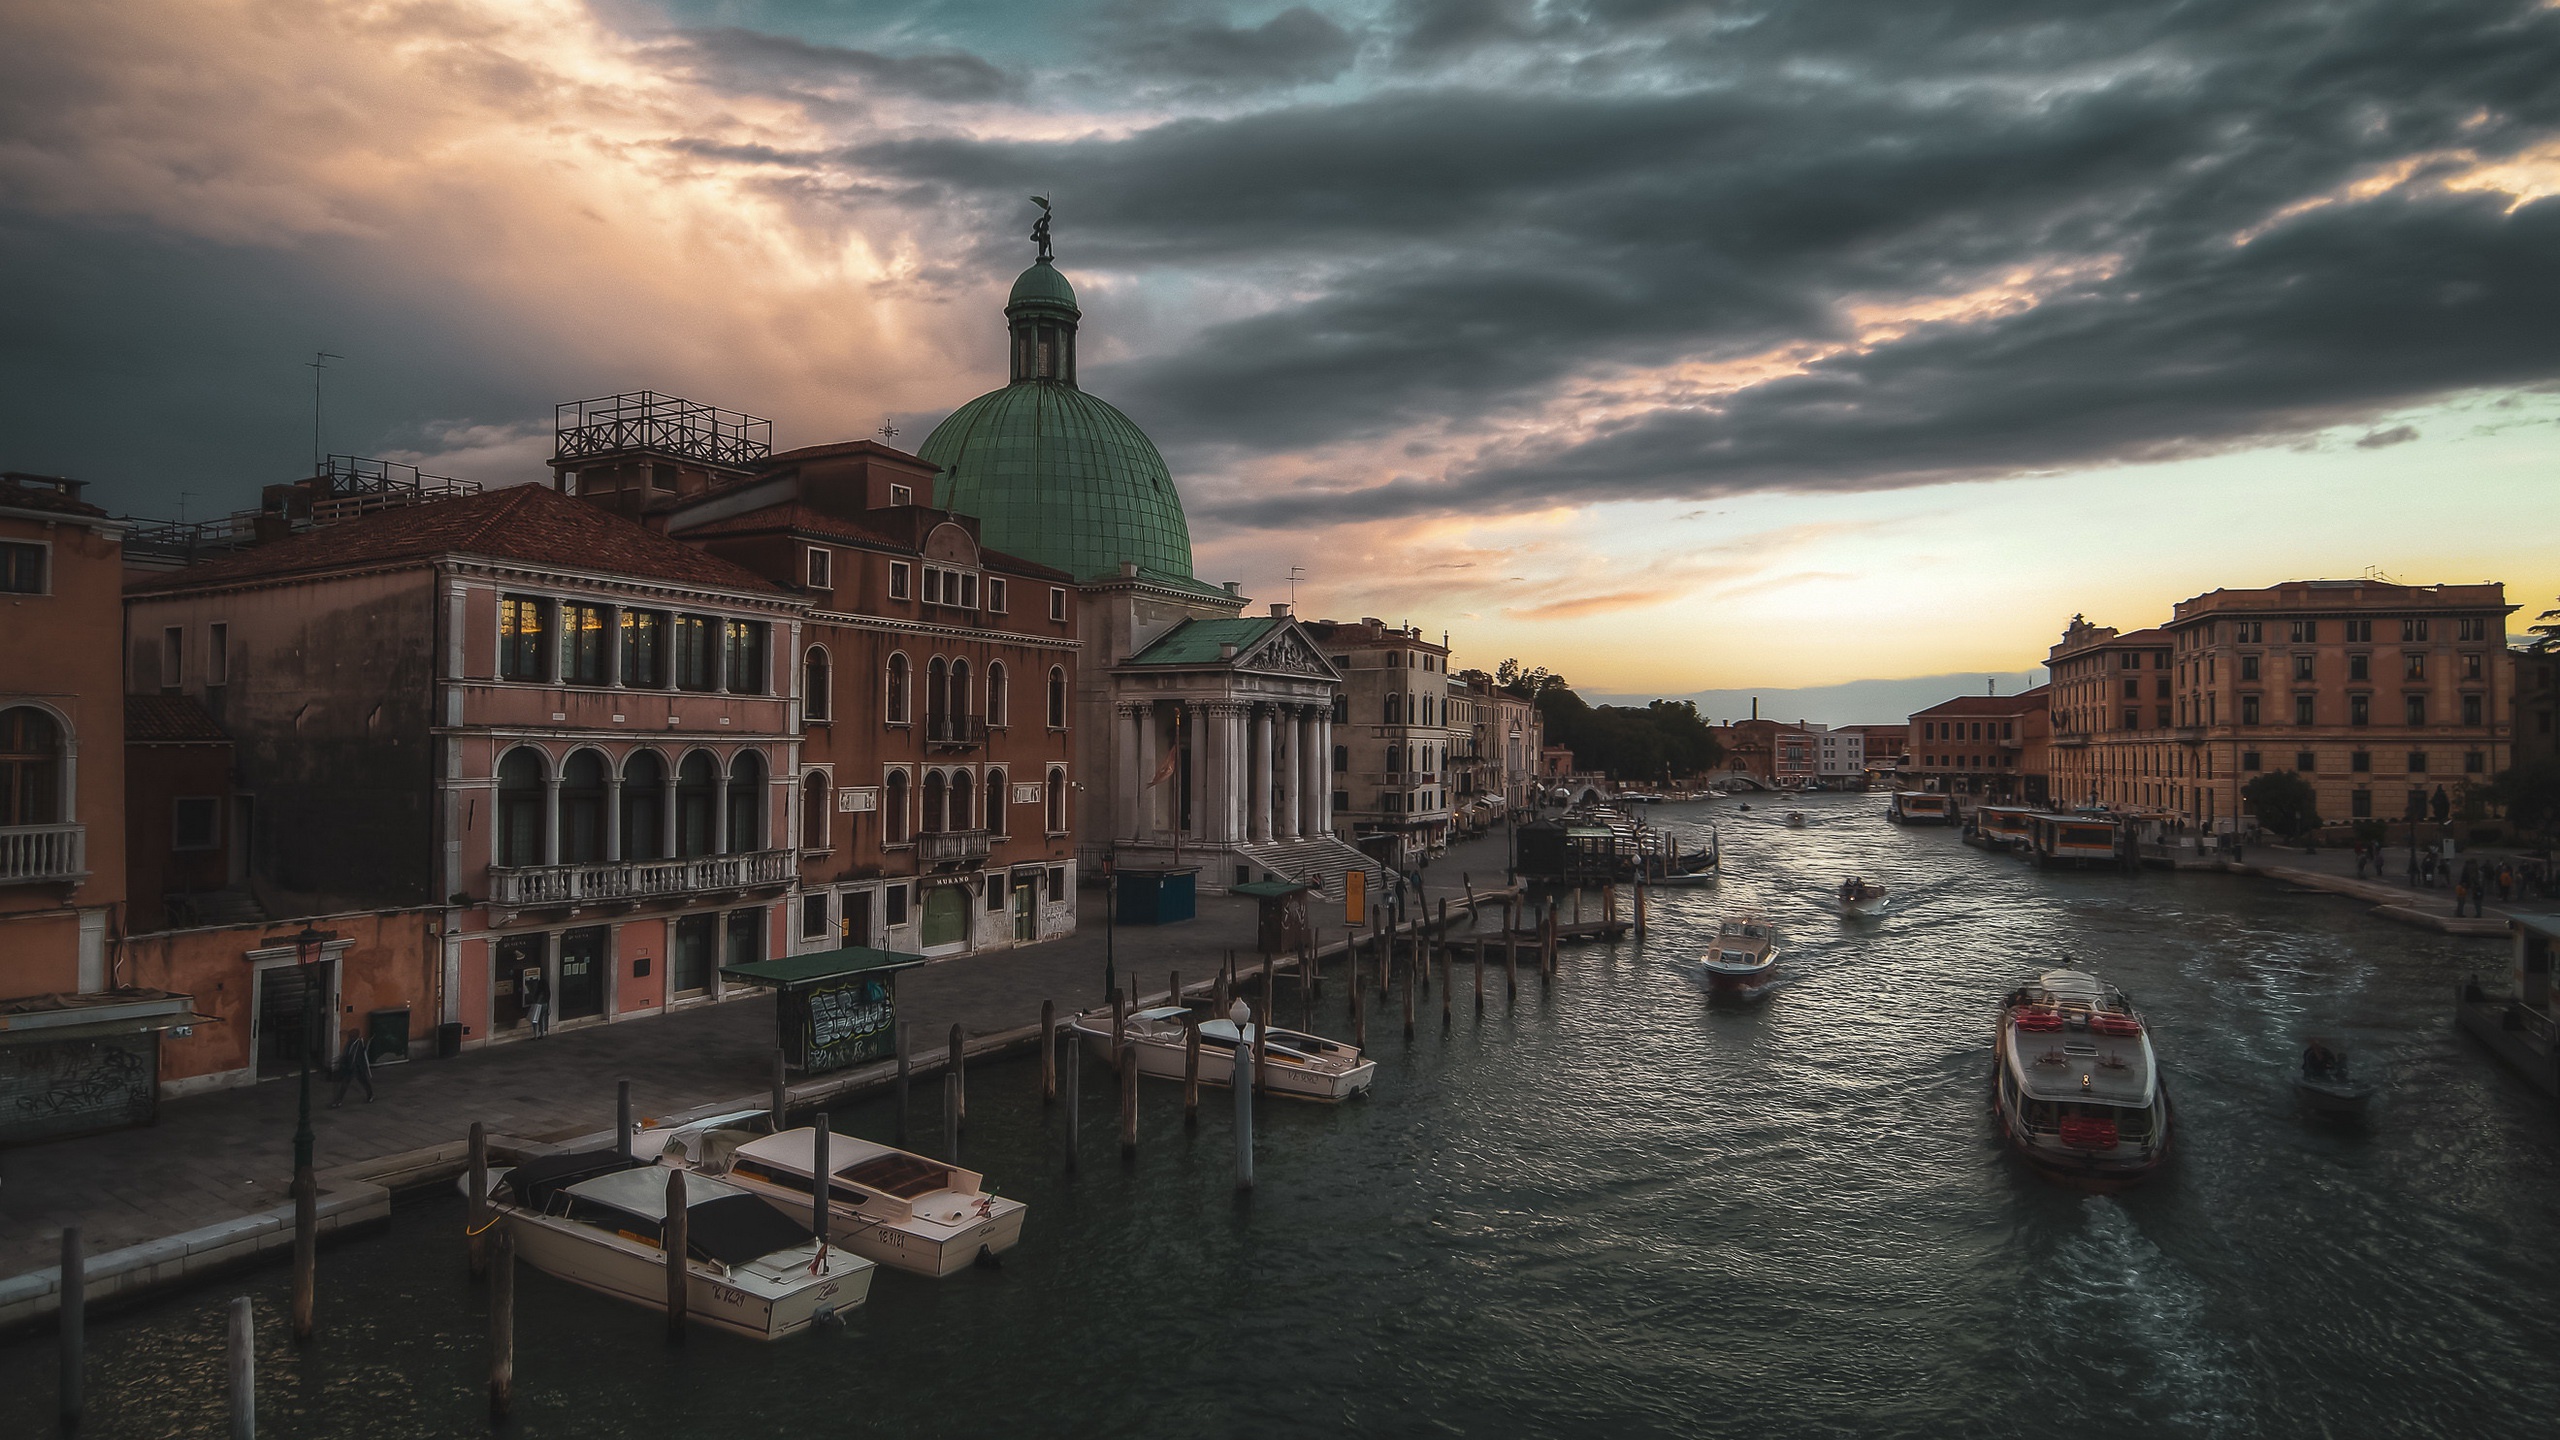 Скачать обои бесплатно Города, Италия, Венеция, Город, Сделано Человеком картинка на рабочий стол ПК